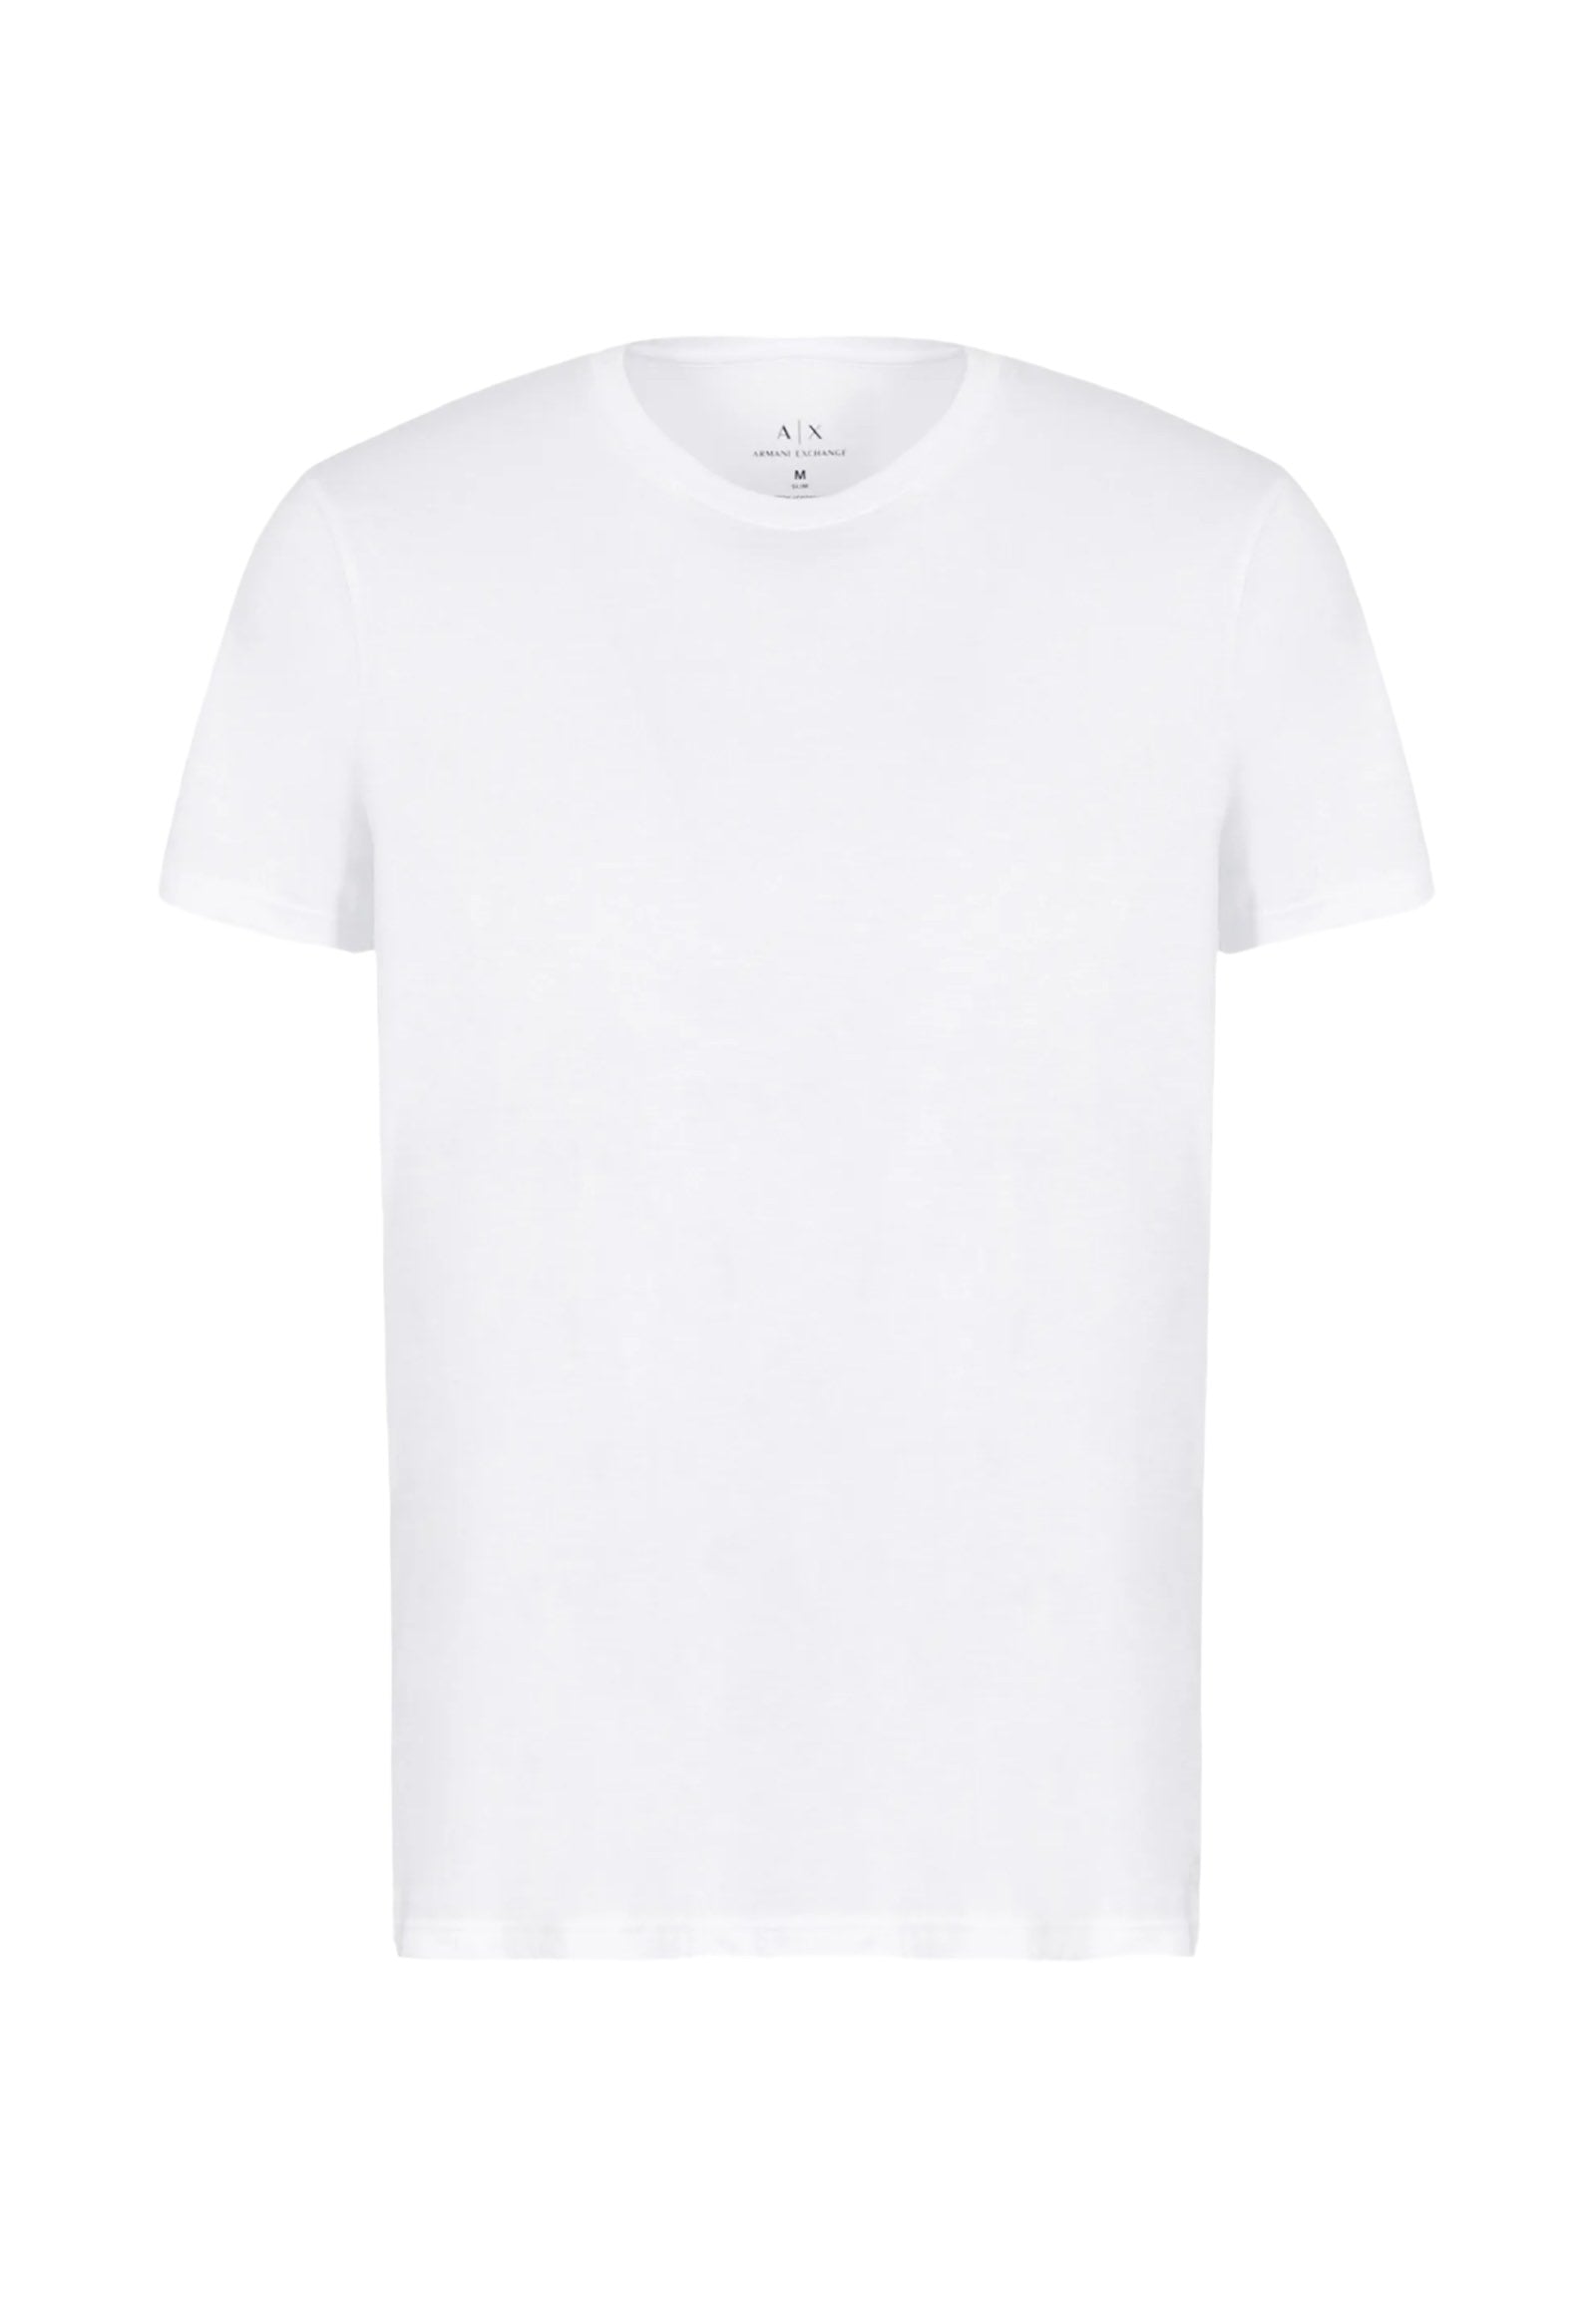 8nzt74 White T-Shirt